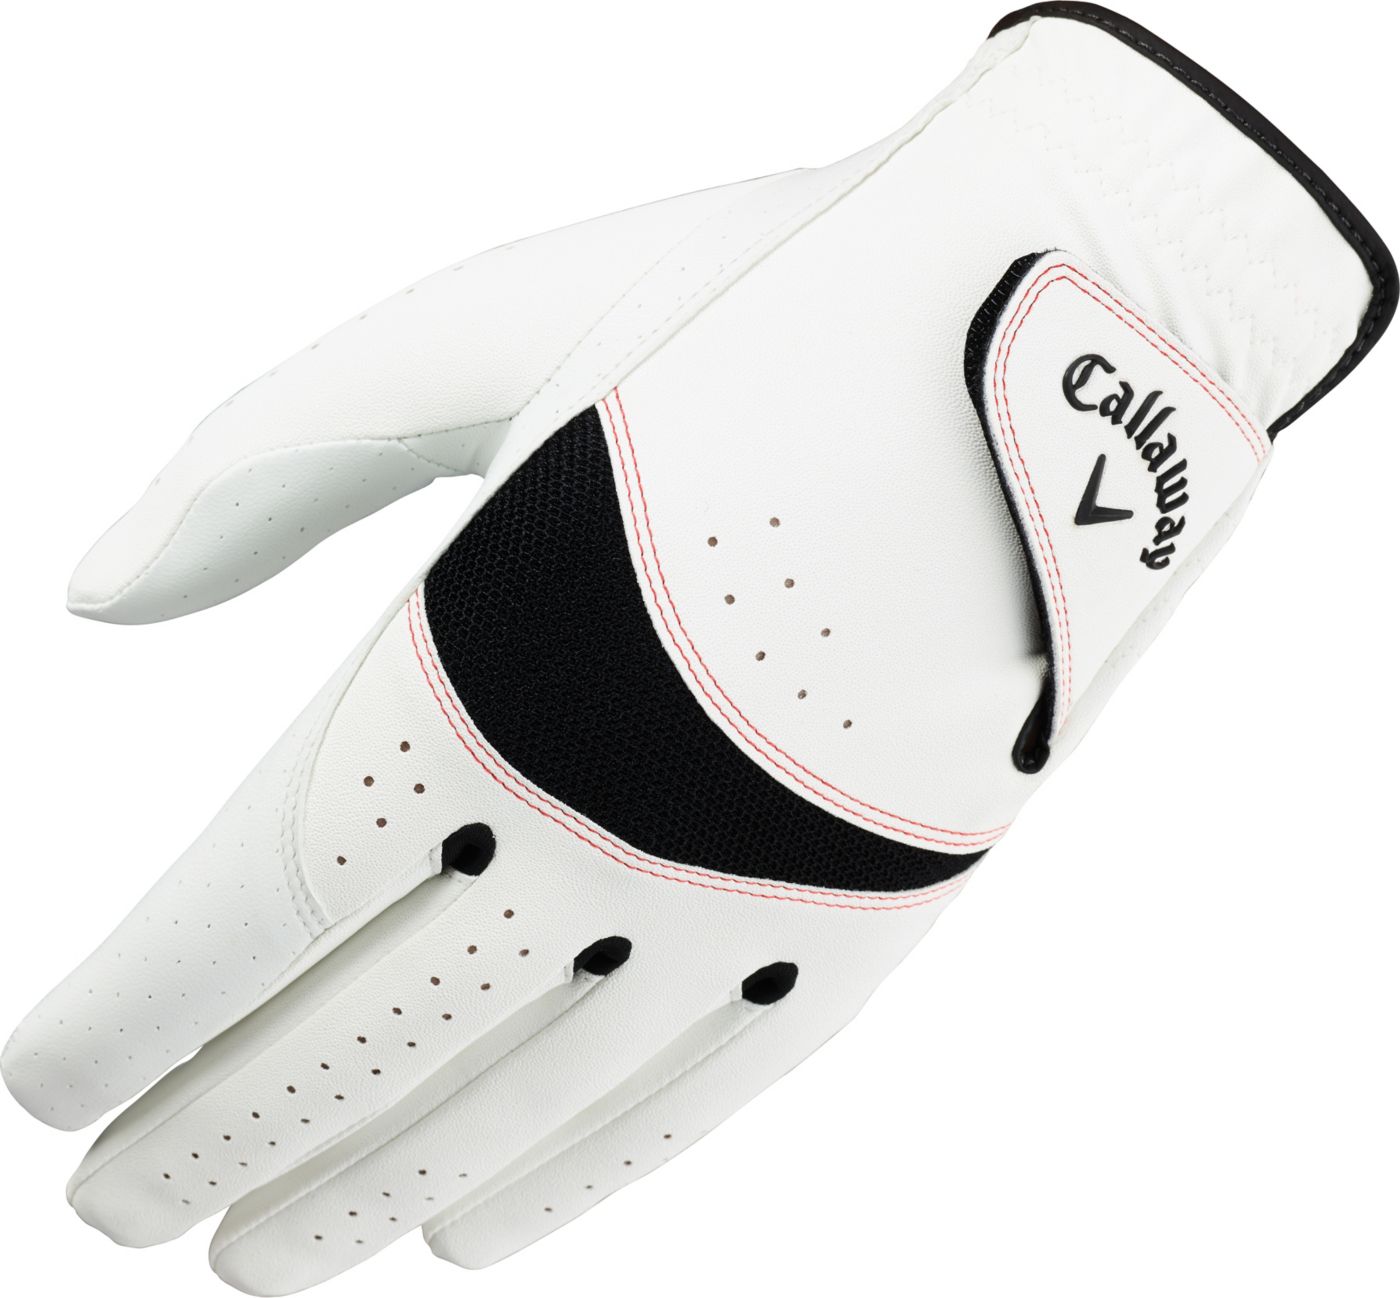 Callaway 2019 XTech Golf Glove DICK'S Sporting Goods